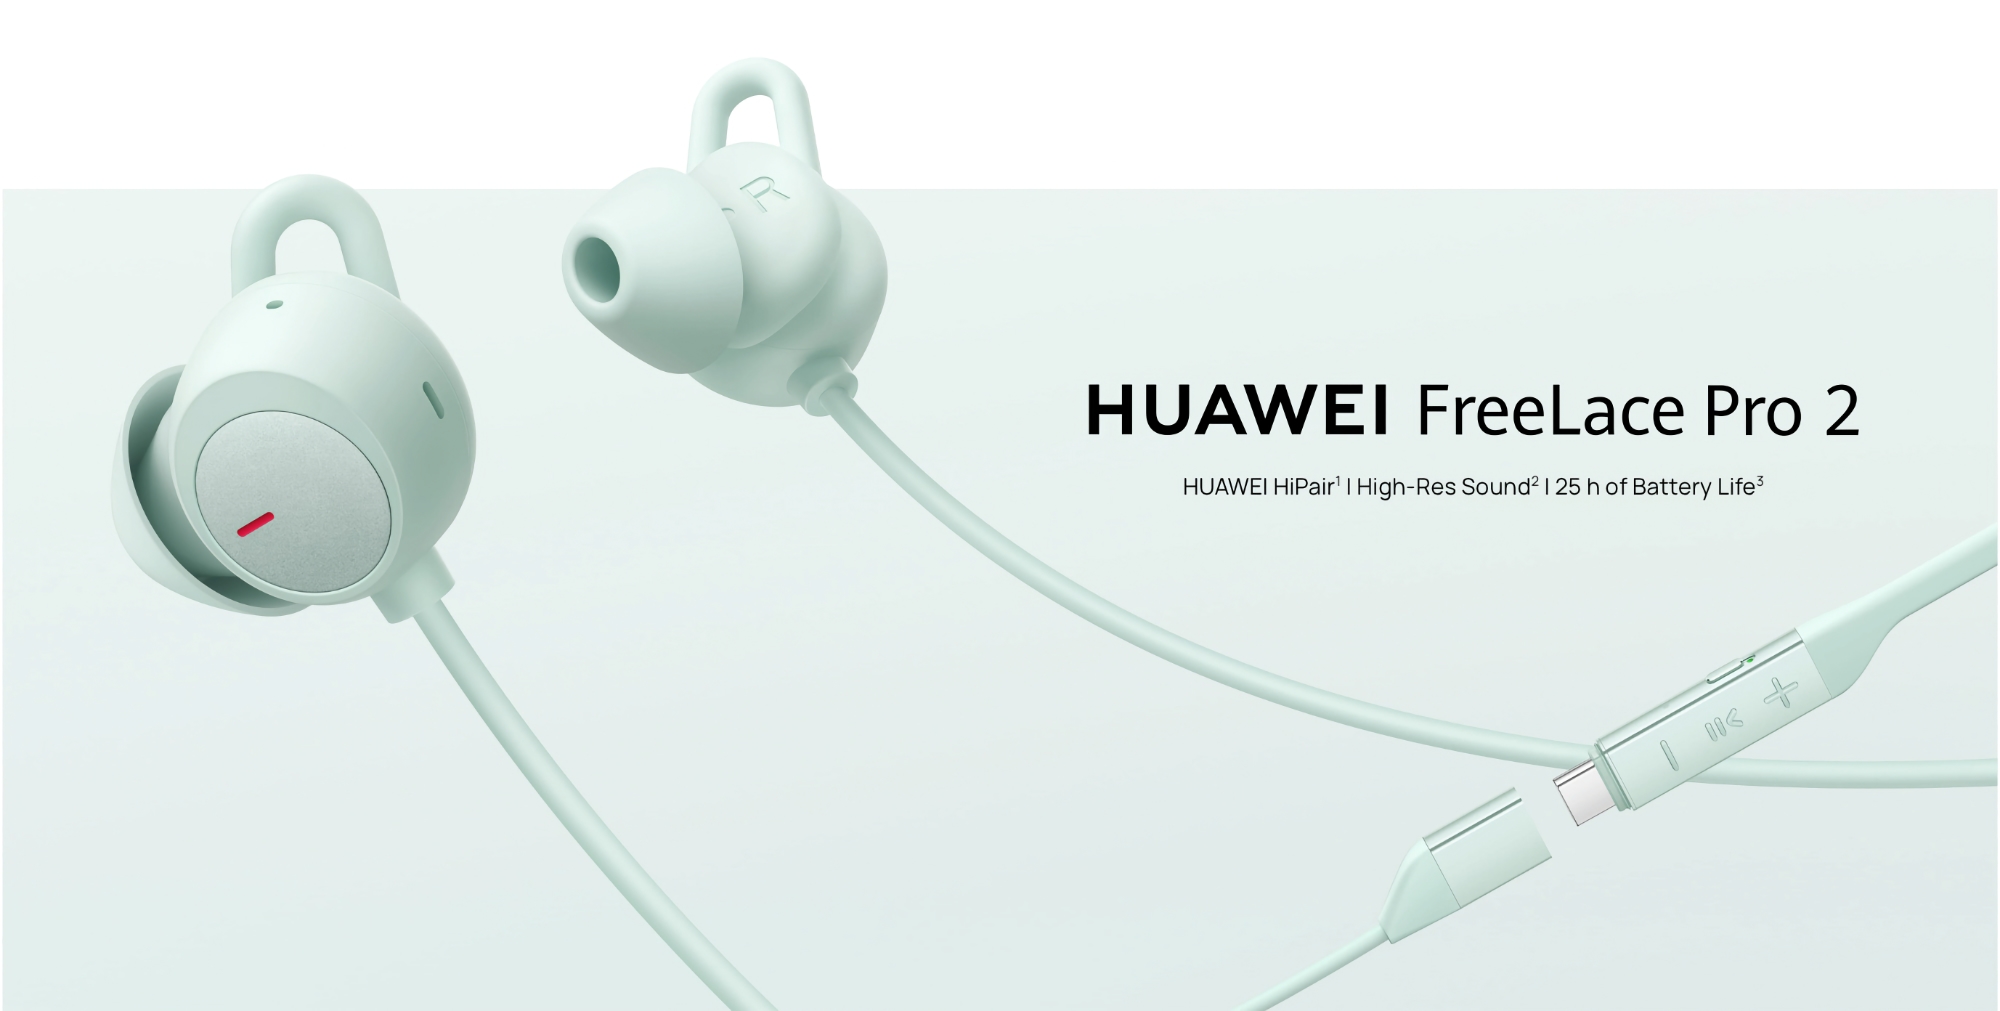 Huawei a lancé le FreeLace Pro 2 avec ANC et jusqu'à 25 heures d'autonomie sur le marché mondial.